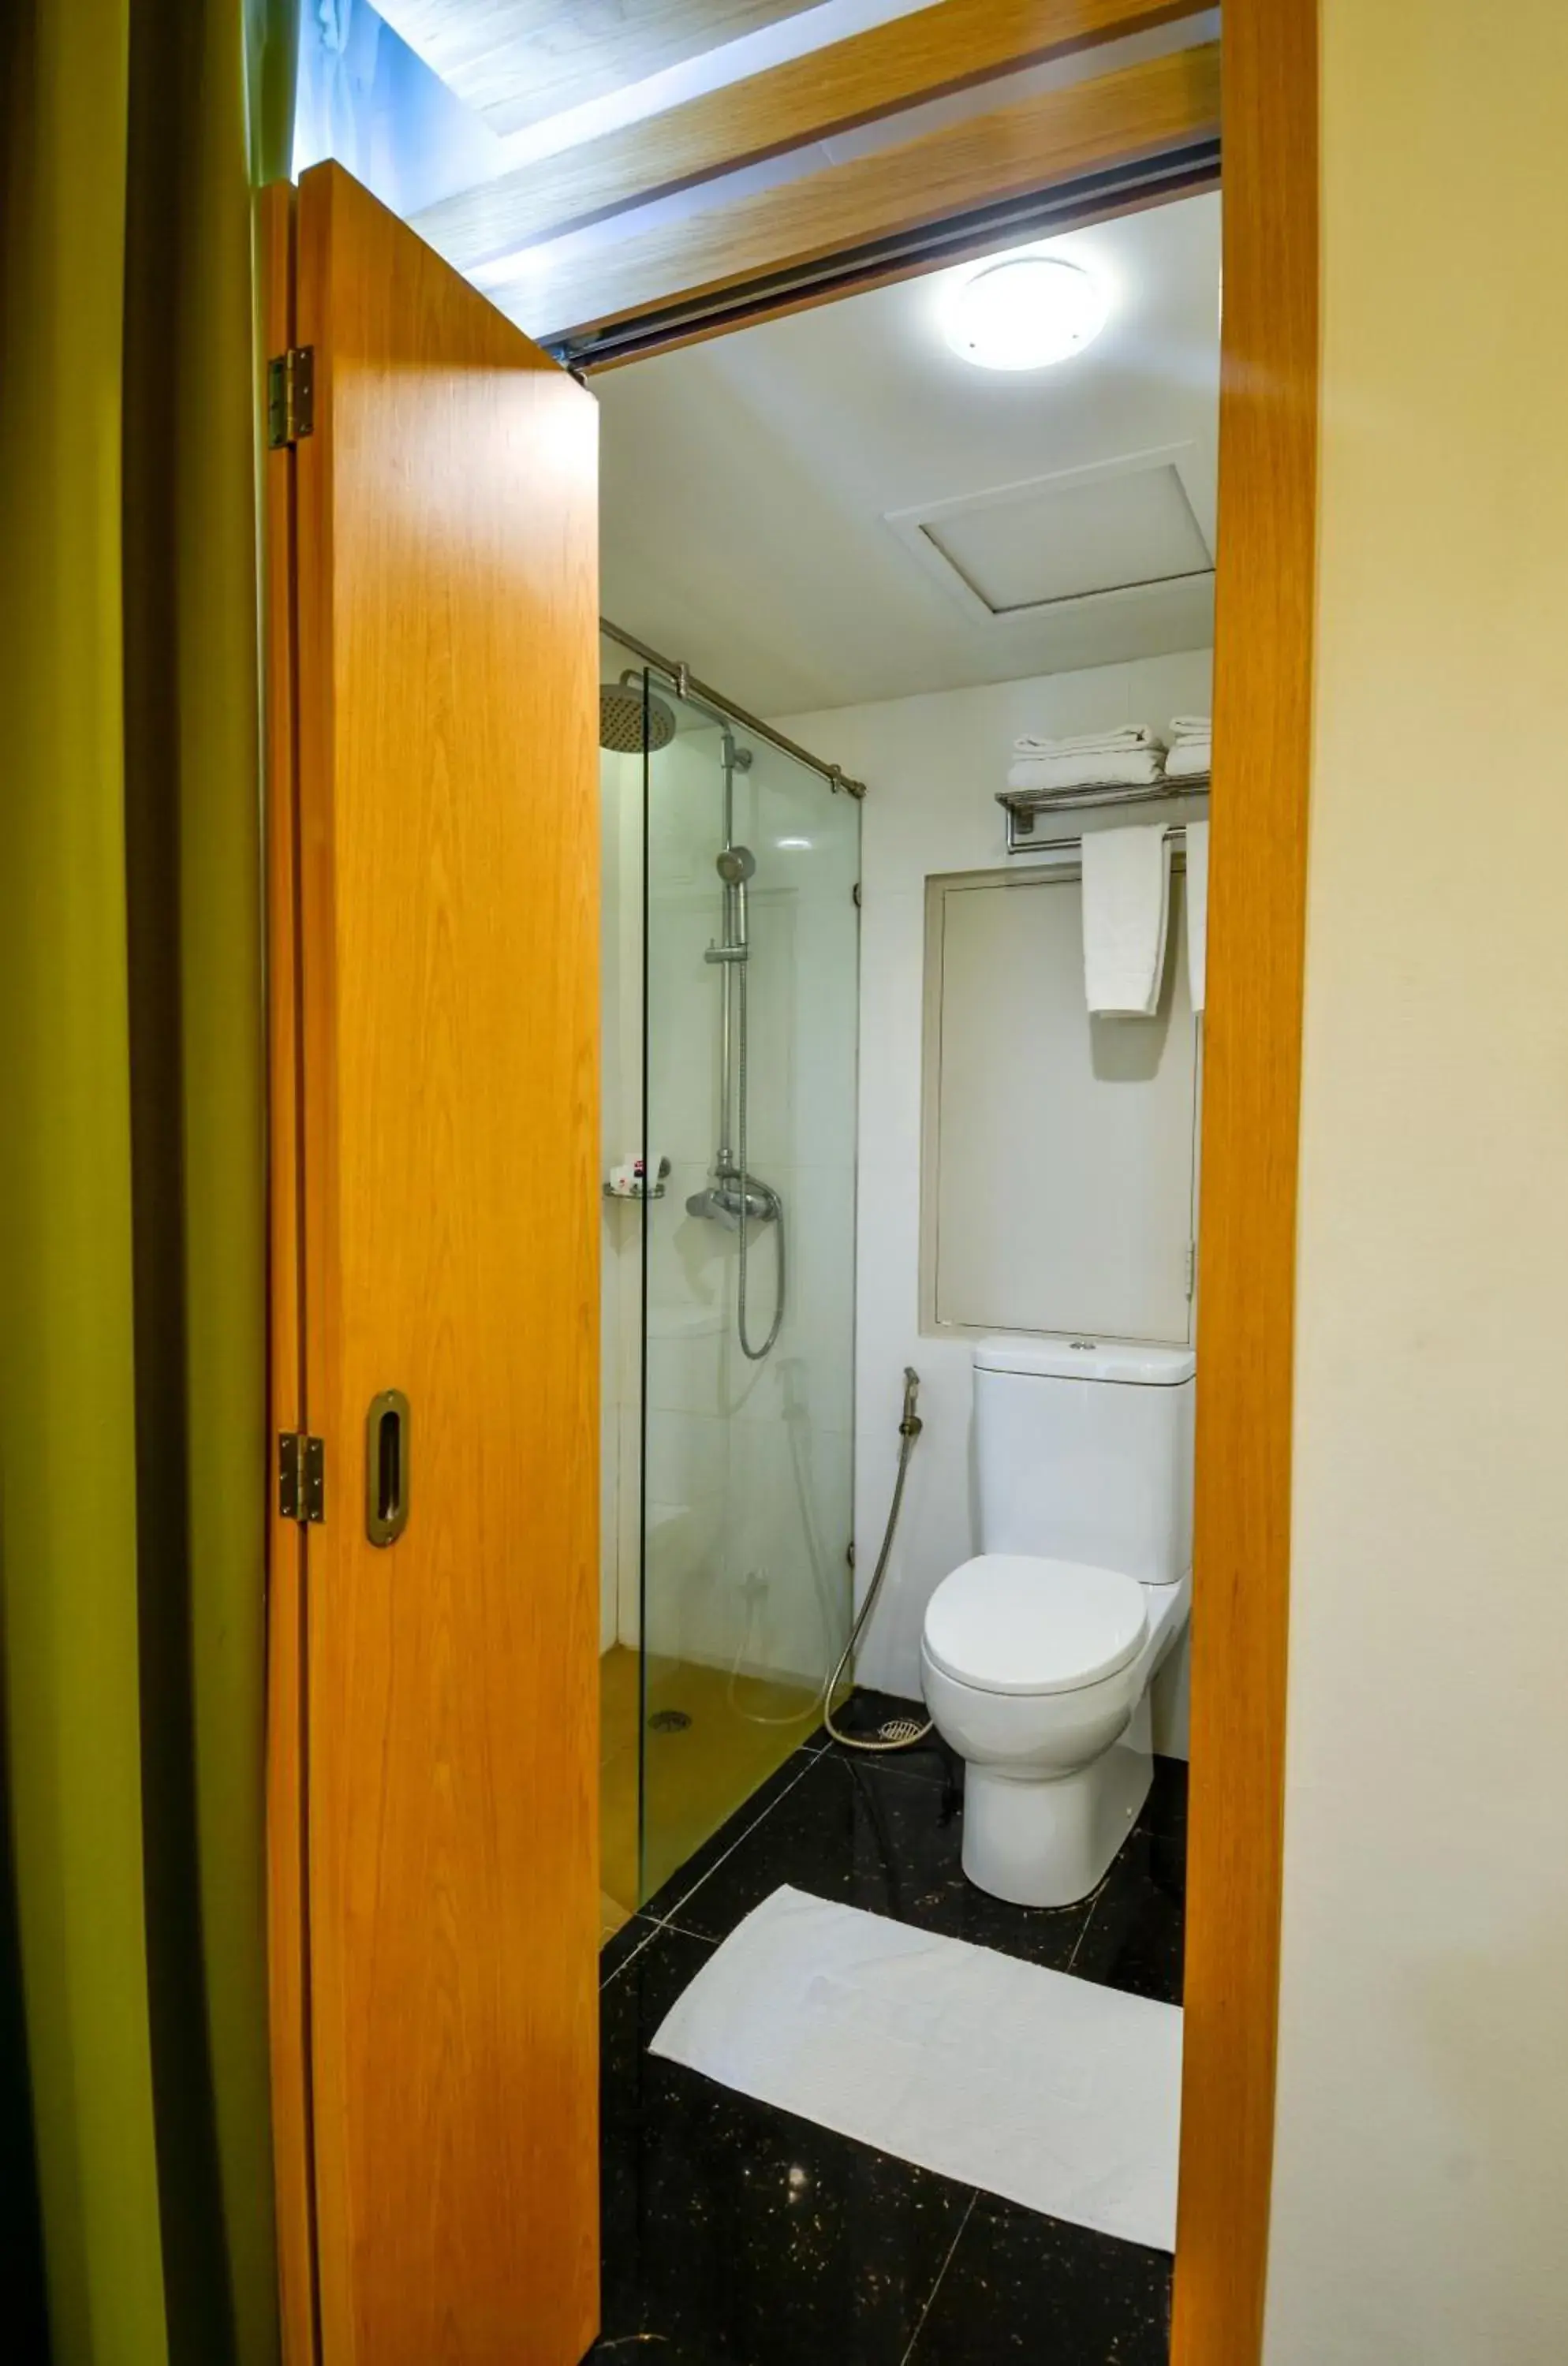 Toilet, Bathroom in Viva Hotel Songkhla